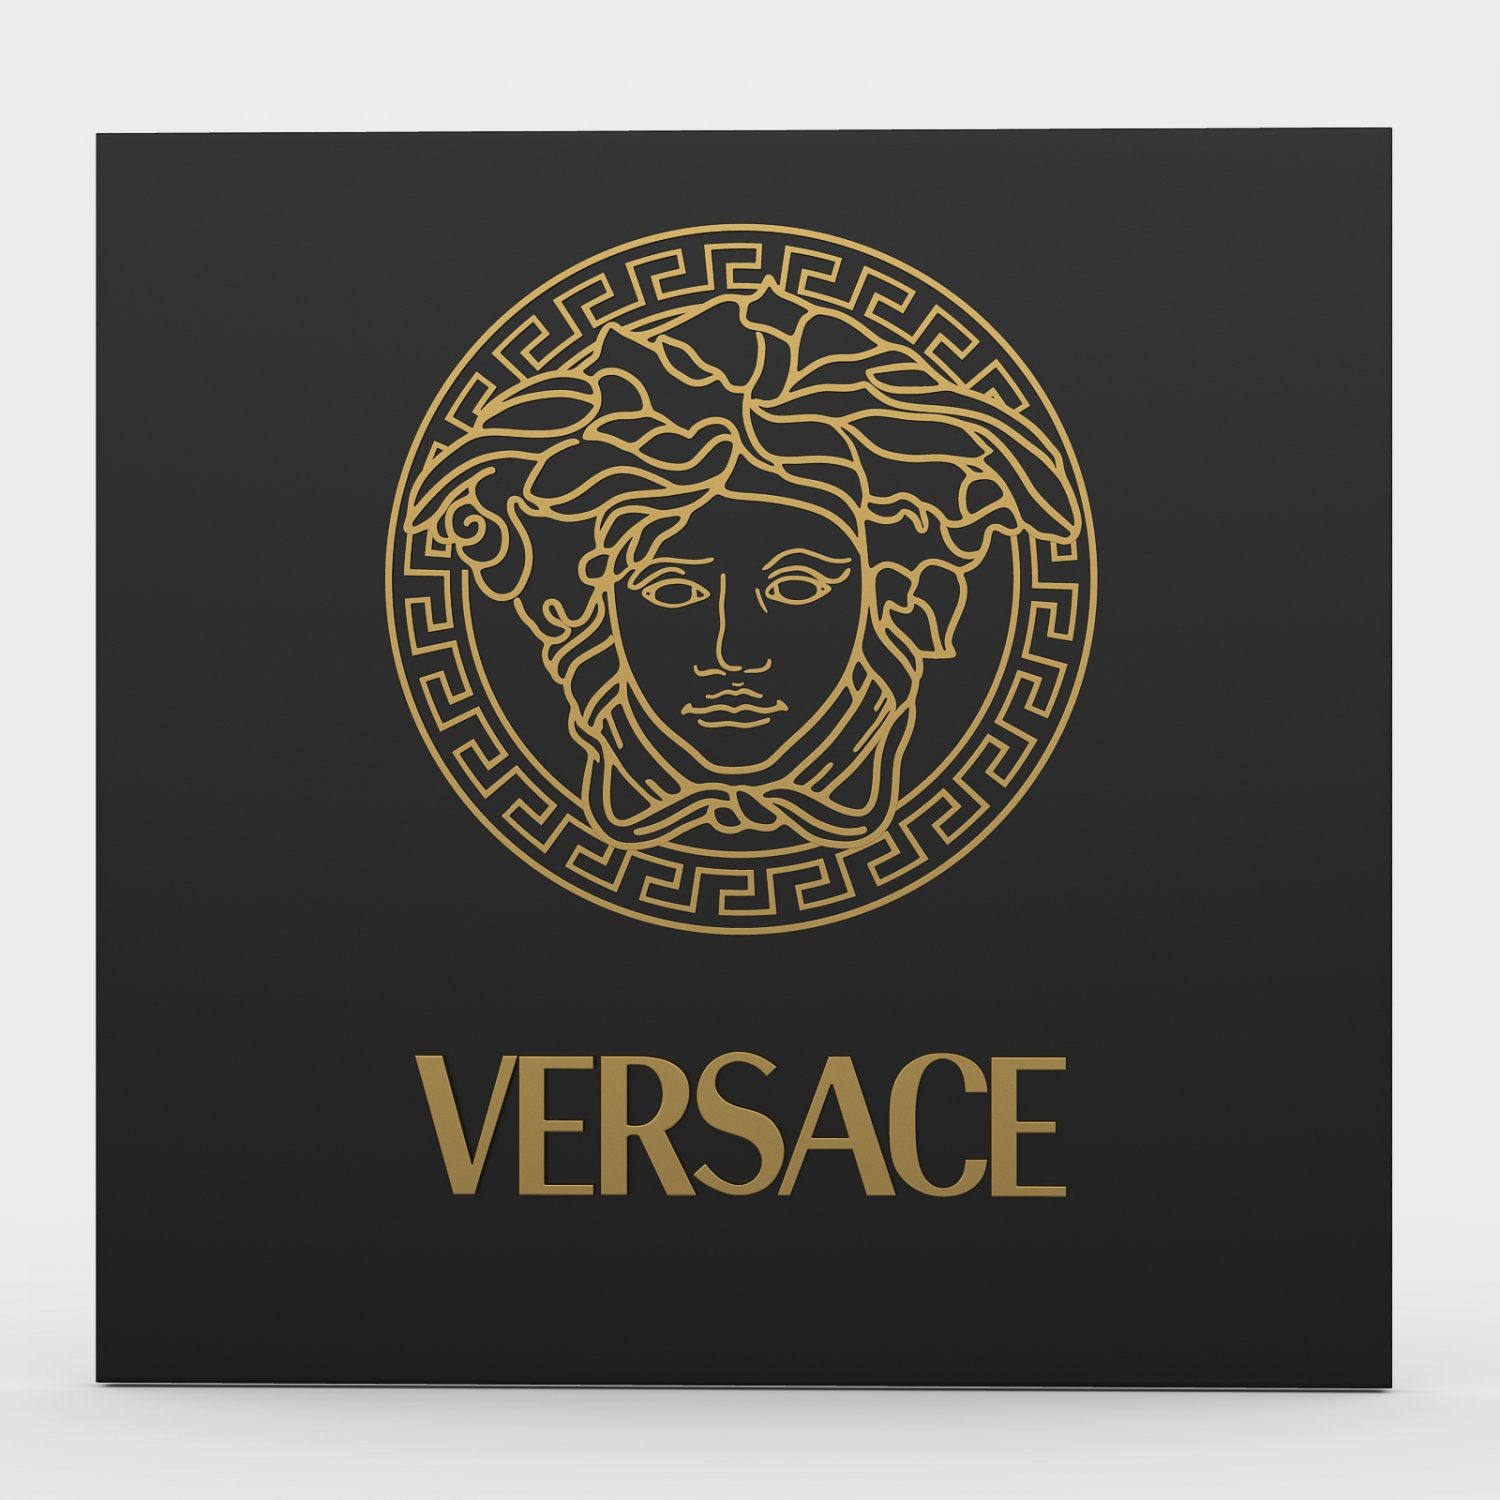 Versace Logos